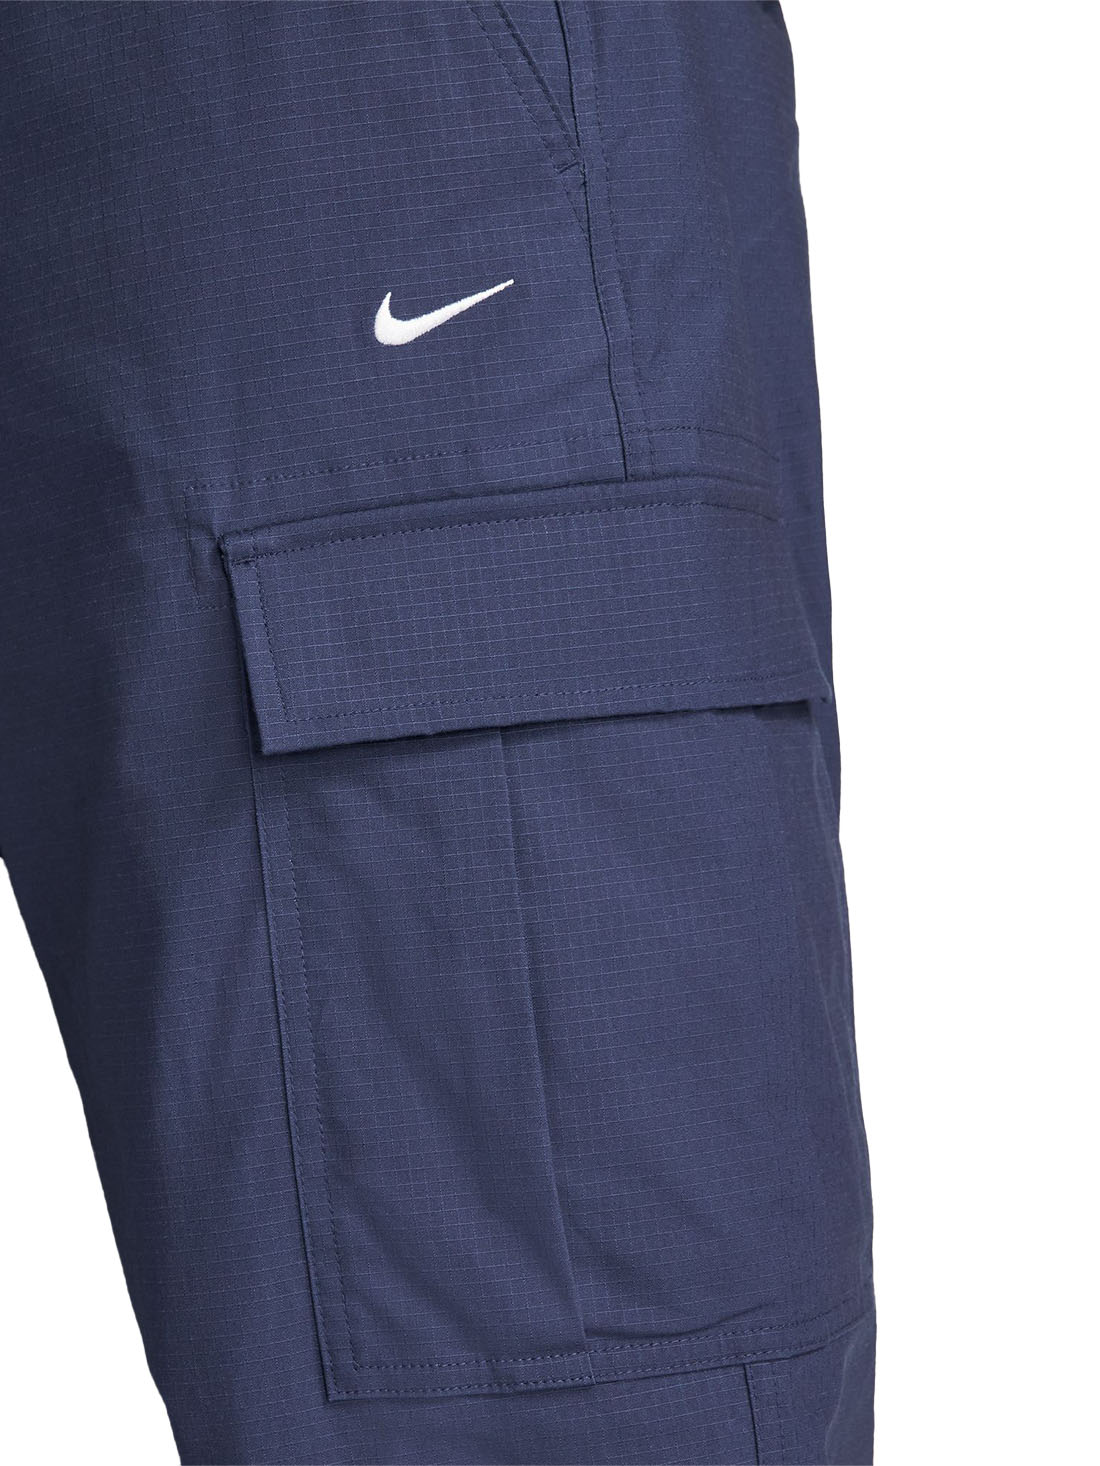 Nike SB Kearny Cargo Pant - Midnight Navy 